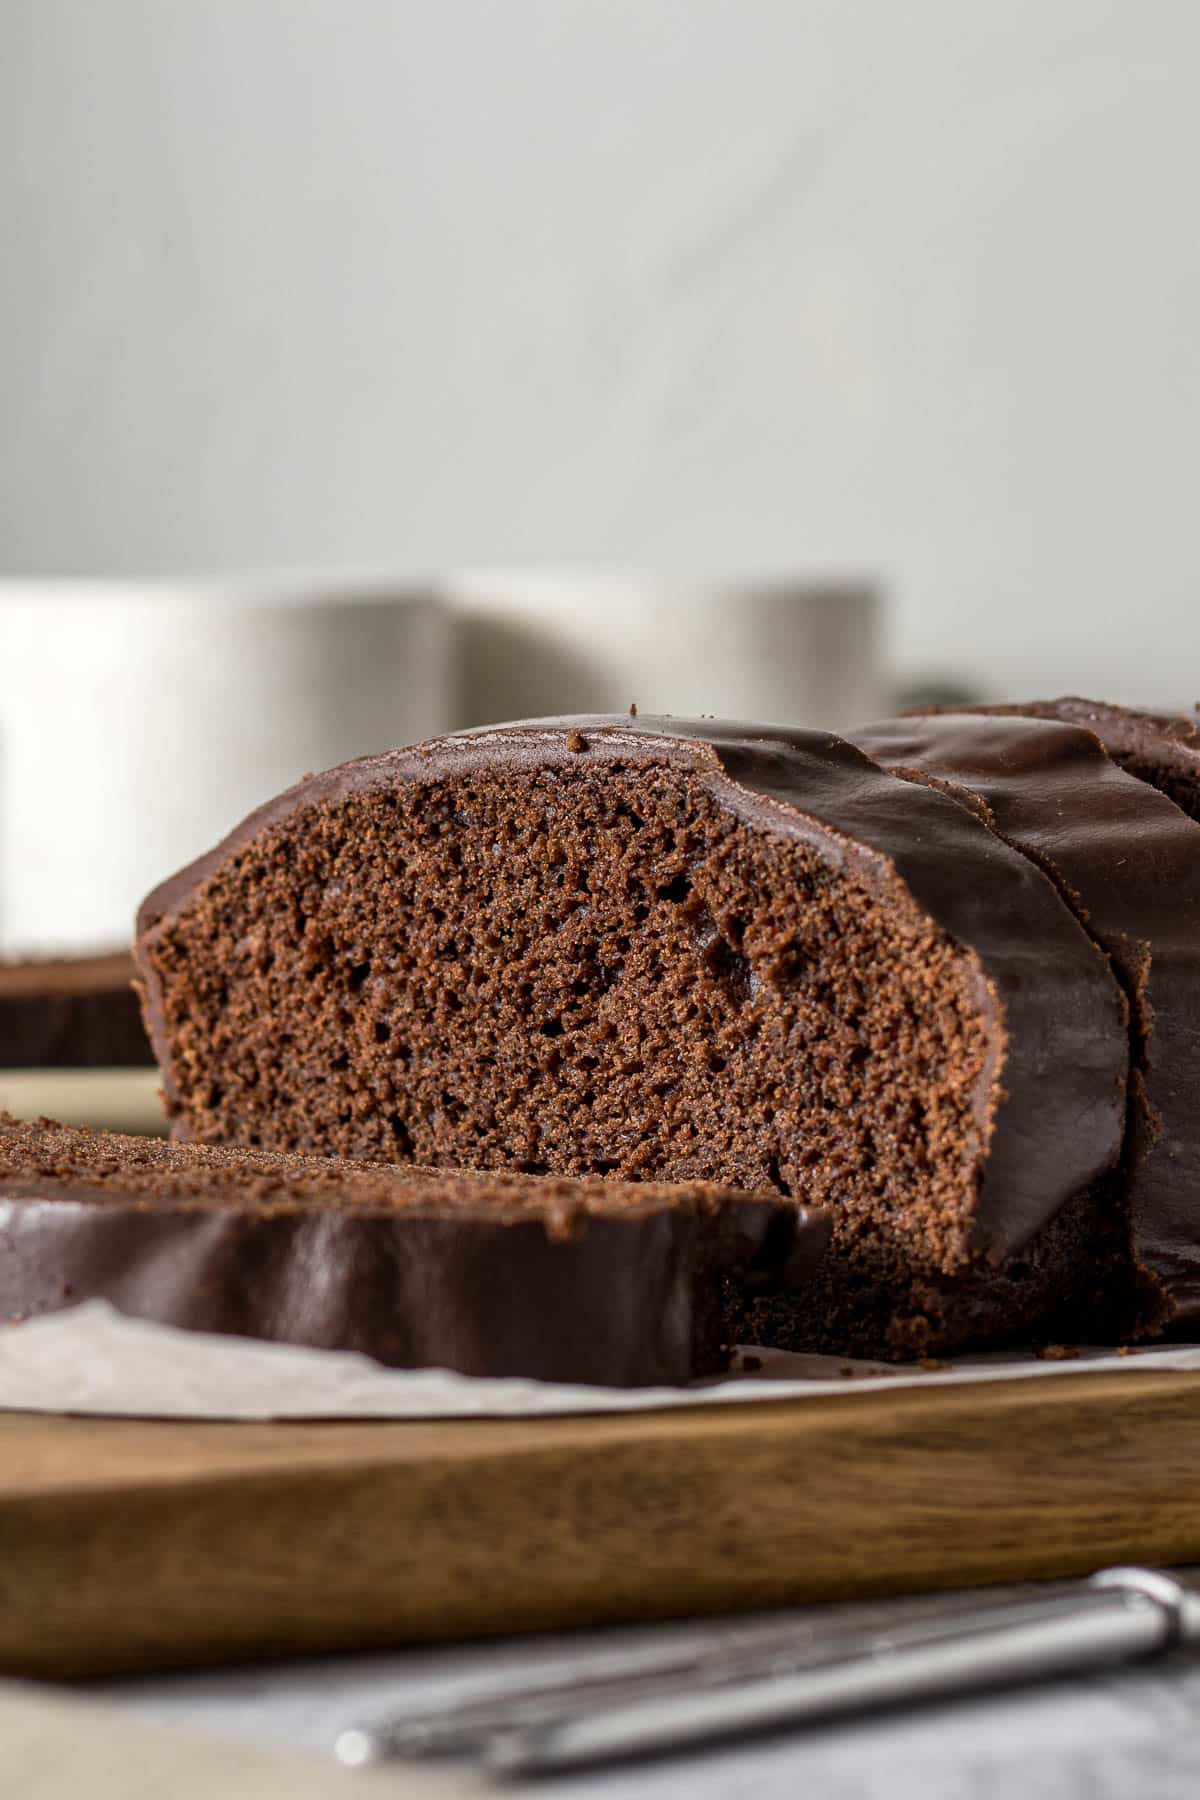 Sliced chocolate loaf cake with chocolate glaze.